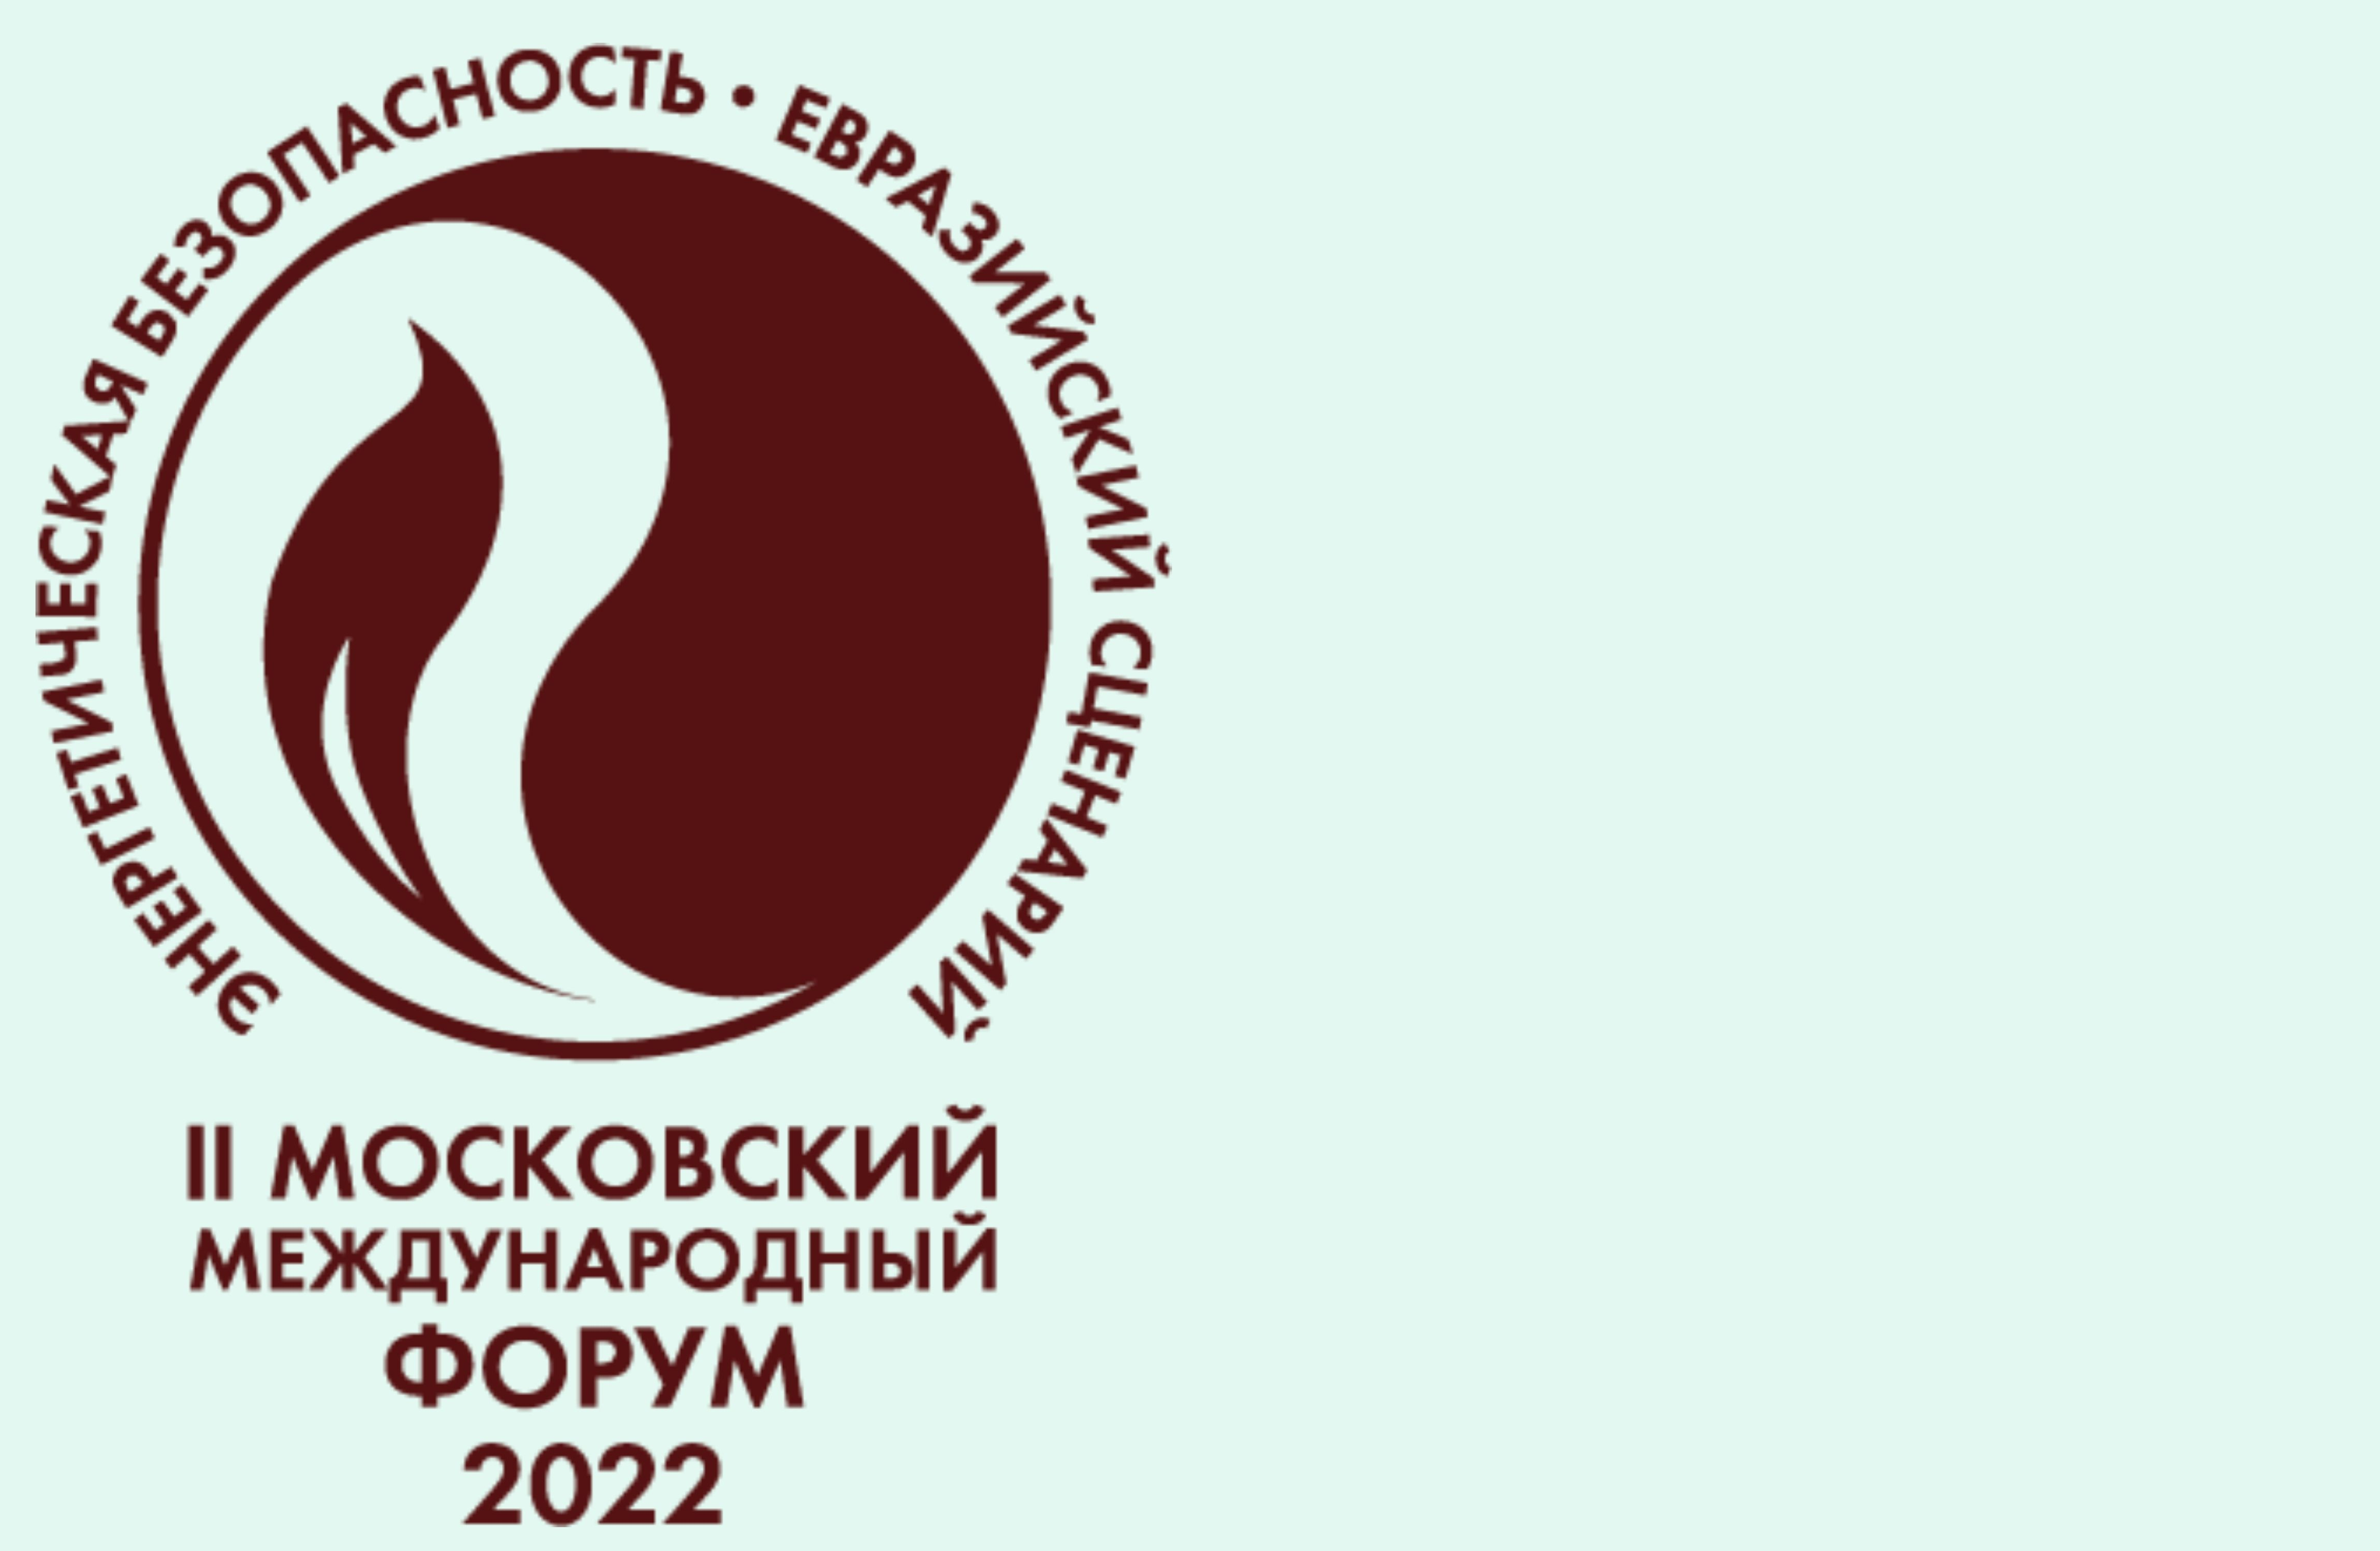 Прямая трансляция II Московского международного форума «Энергетическая безопасность. Евразийский сценарий»